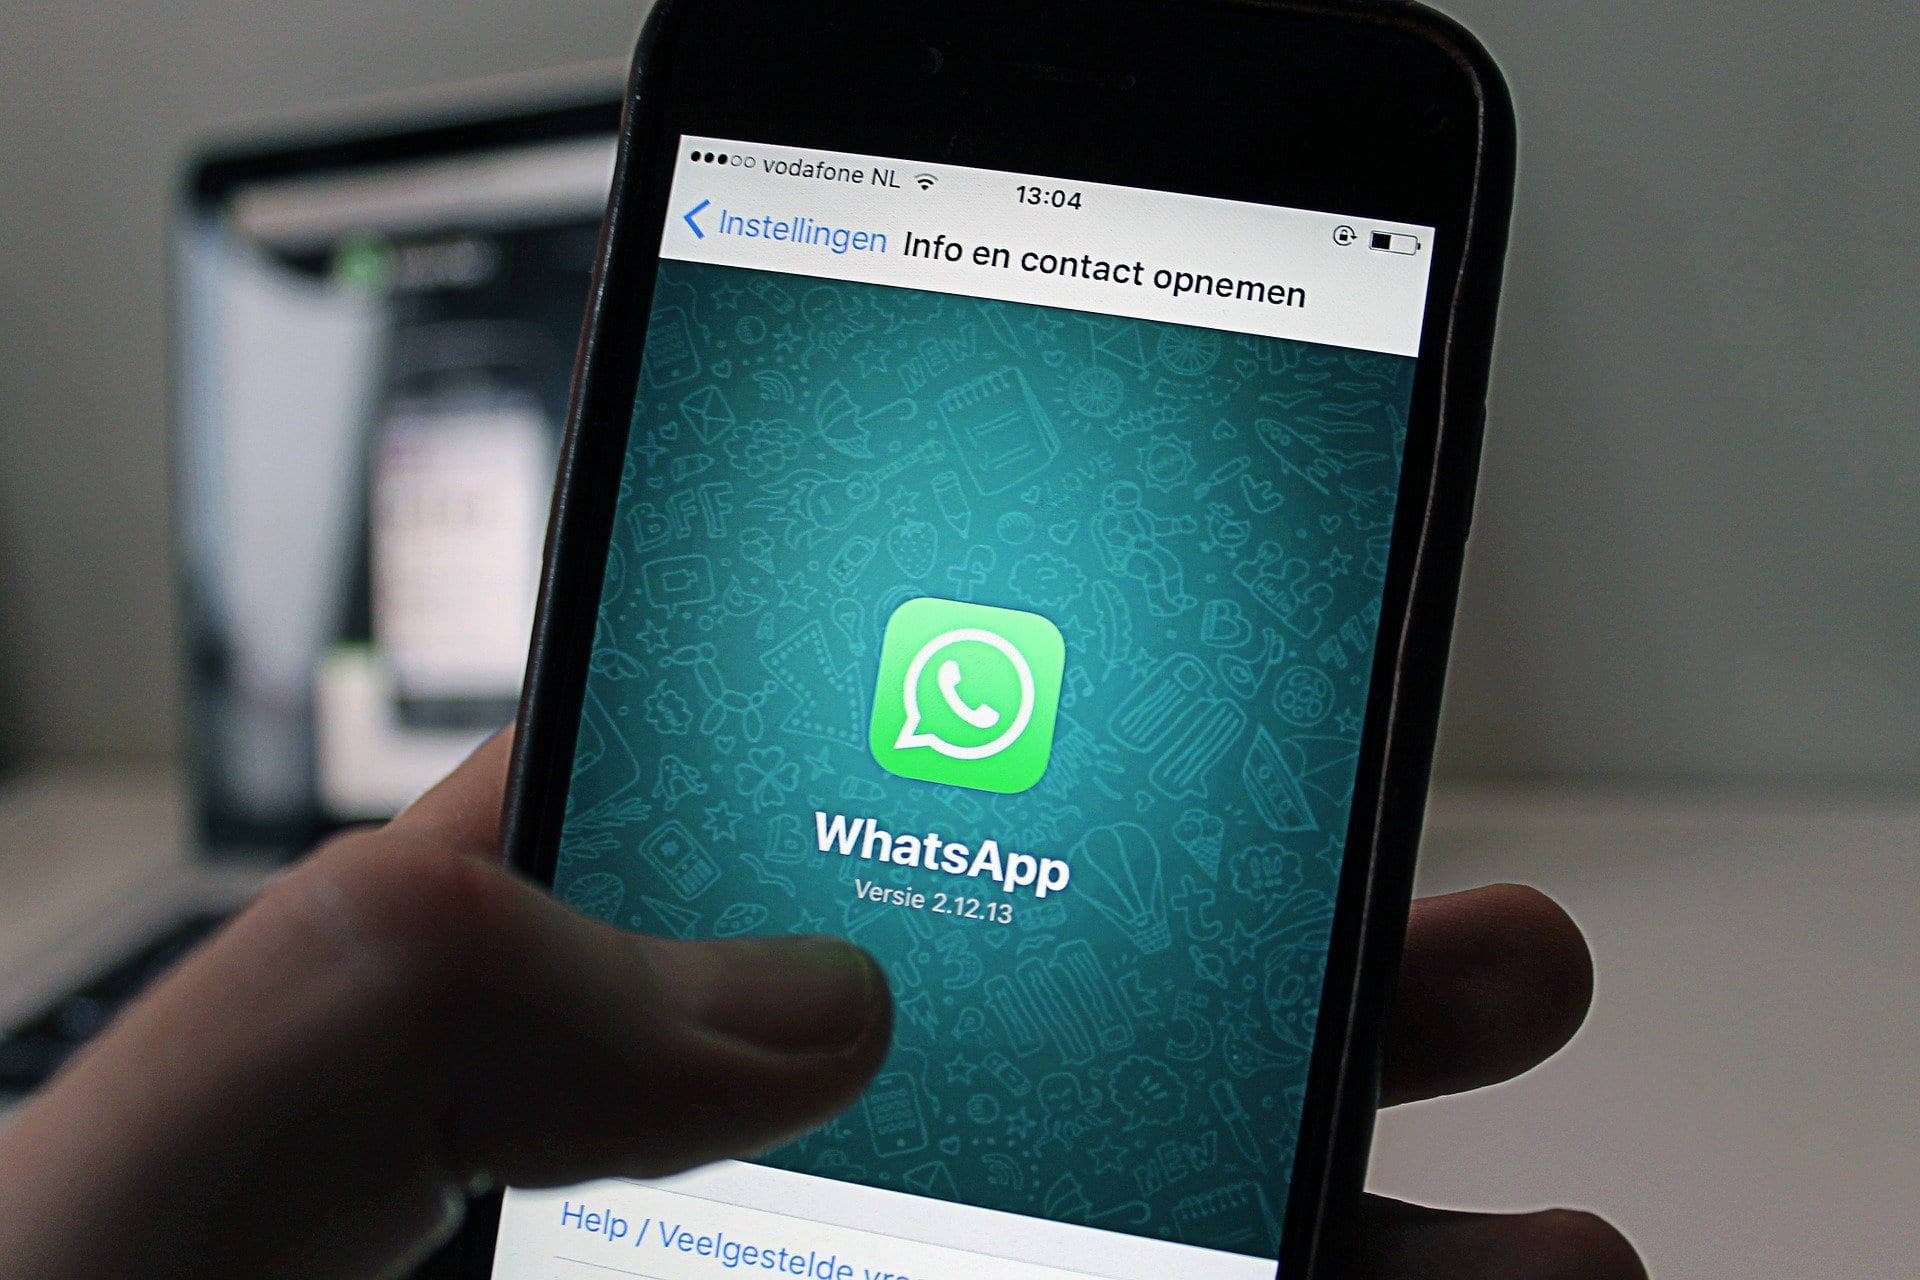 WhatsApp Update: कहीं आपका WhatsApp अकाउंट्स बंद नहीं हो गया ? 17 लाख से ज्यादा भारतीयों के WhatsApp अकाउंट्स बंद